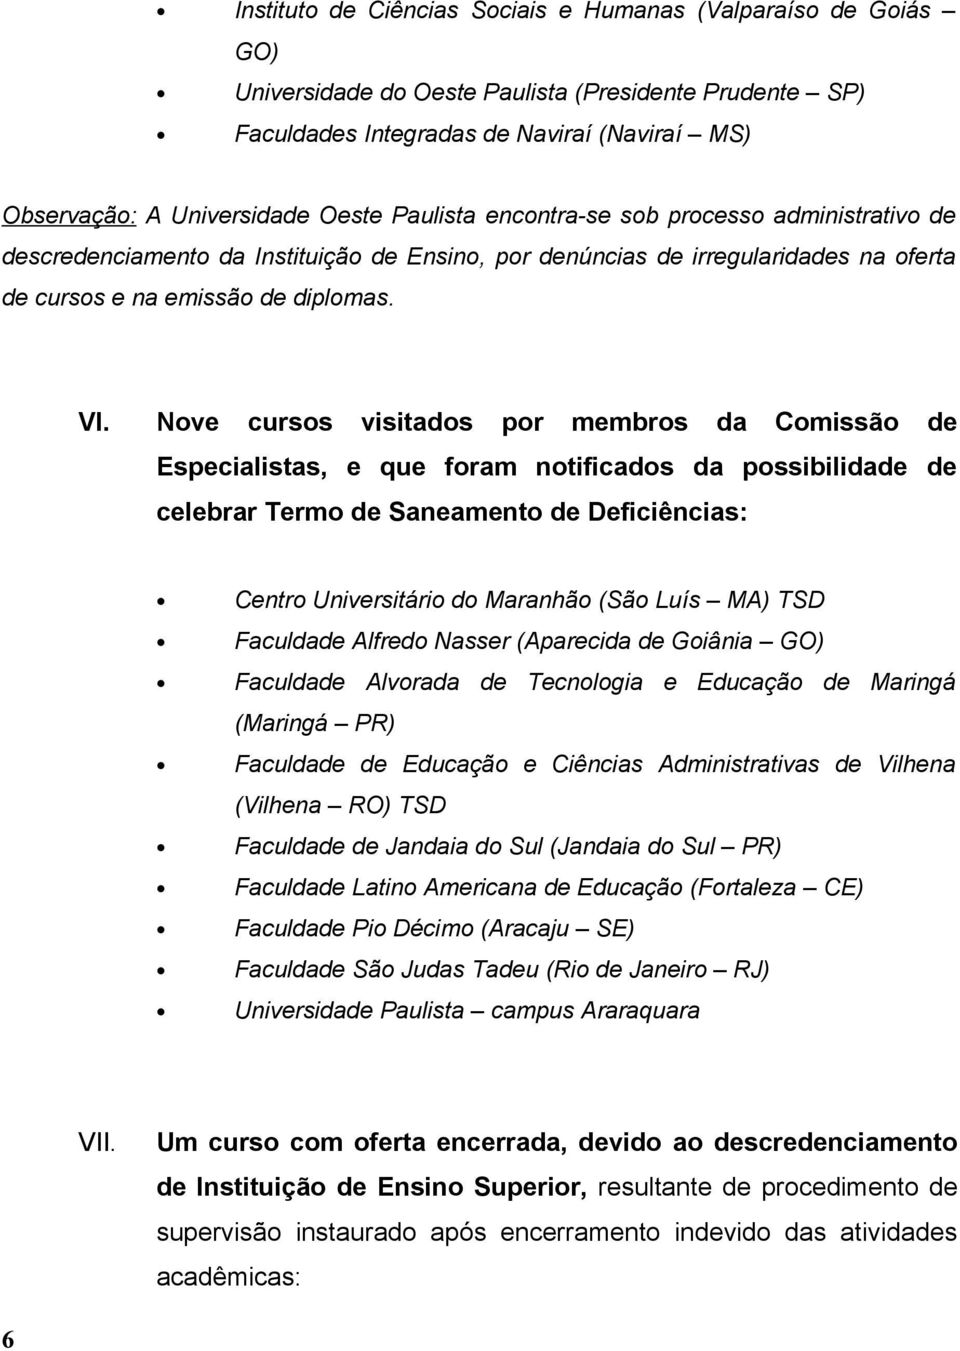 Nove cursos visitados por membros da Comissão de Especialistas, e que foram notificados da possibilidade de celebrar Termo de Saneamento de Deficiências: Centro Universitário do Maranhão (São Luís